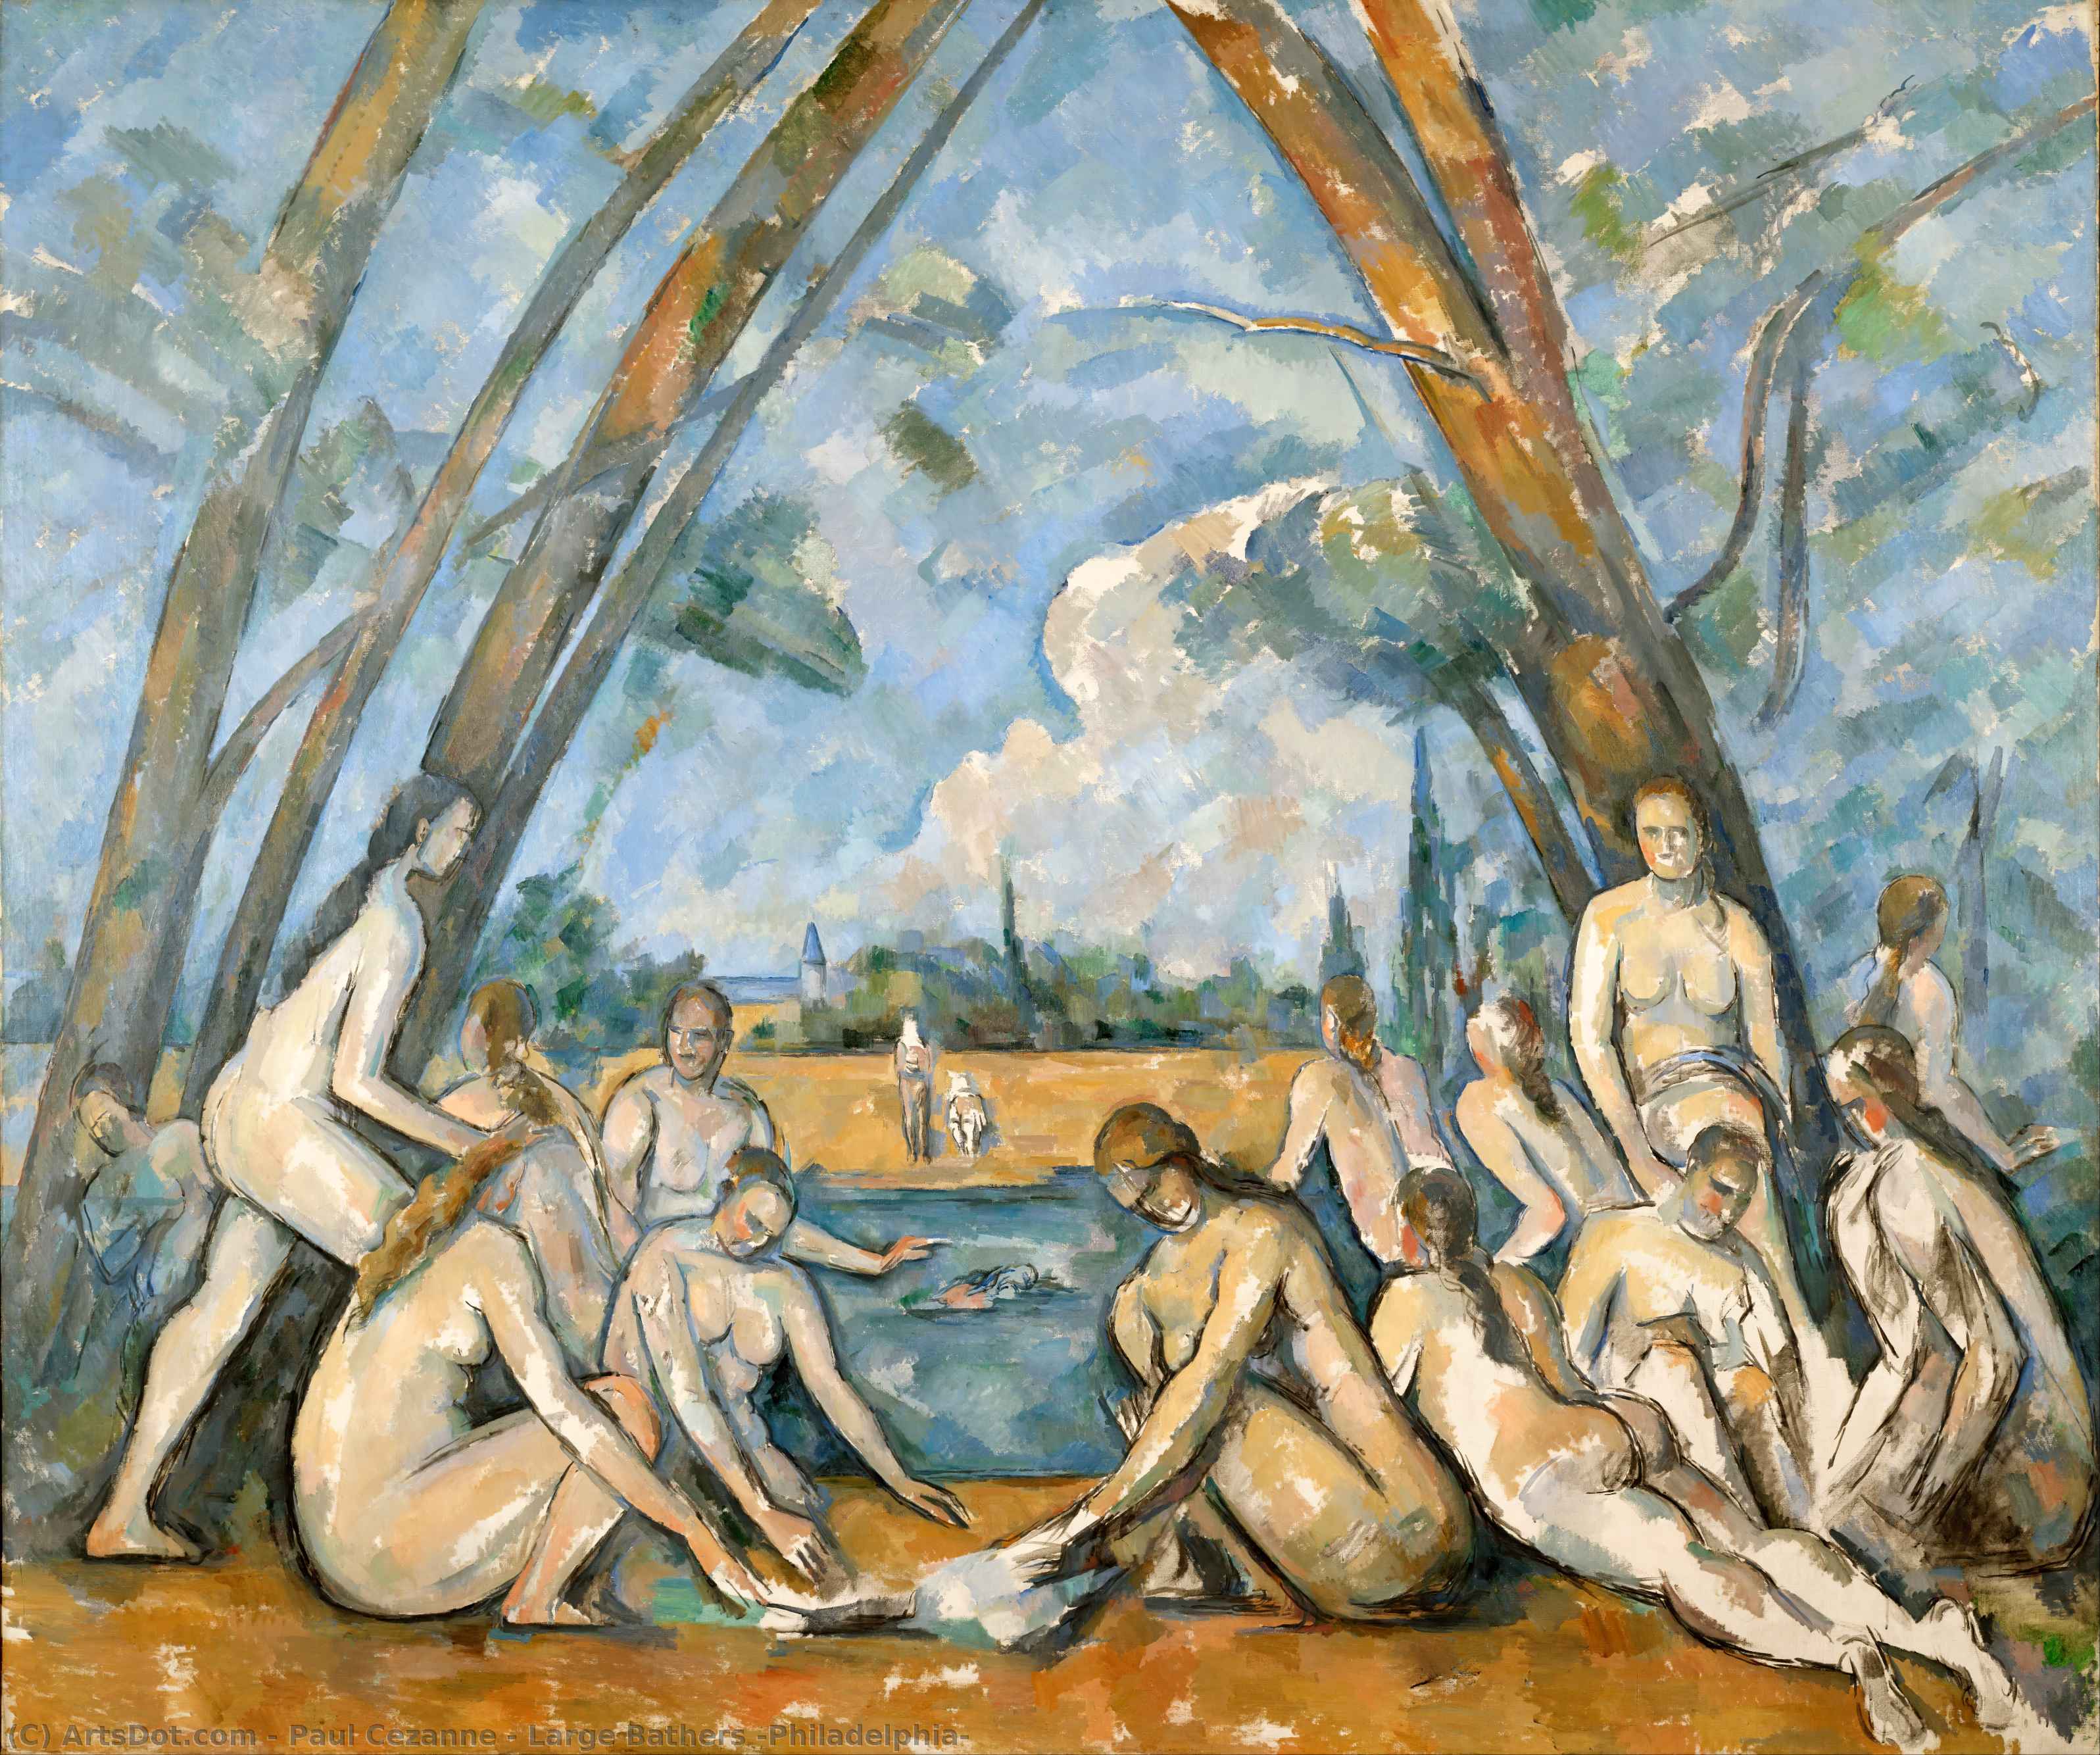 Acheter Reproductions D'art De Musée Grandes baignoires (Philadelphia), 1905 de Paul Cezanne (1839-1906, France) | ArtsDot.com